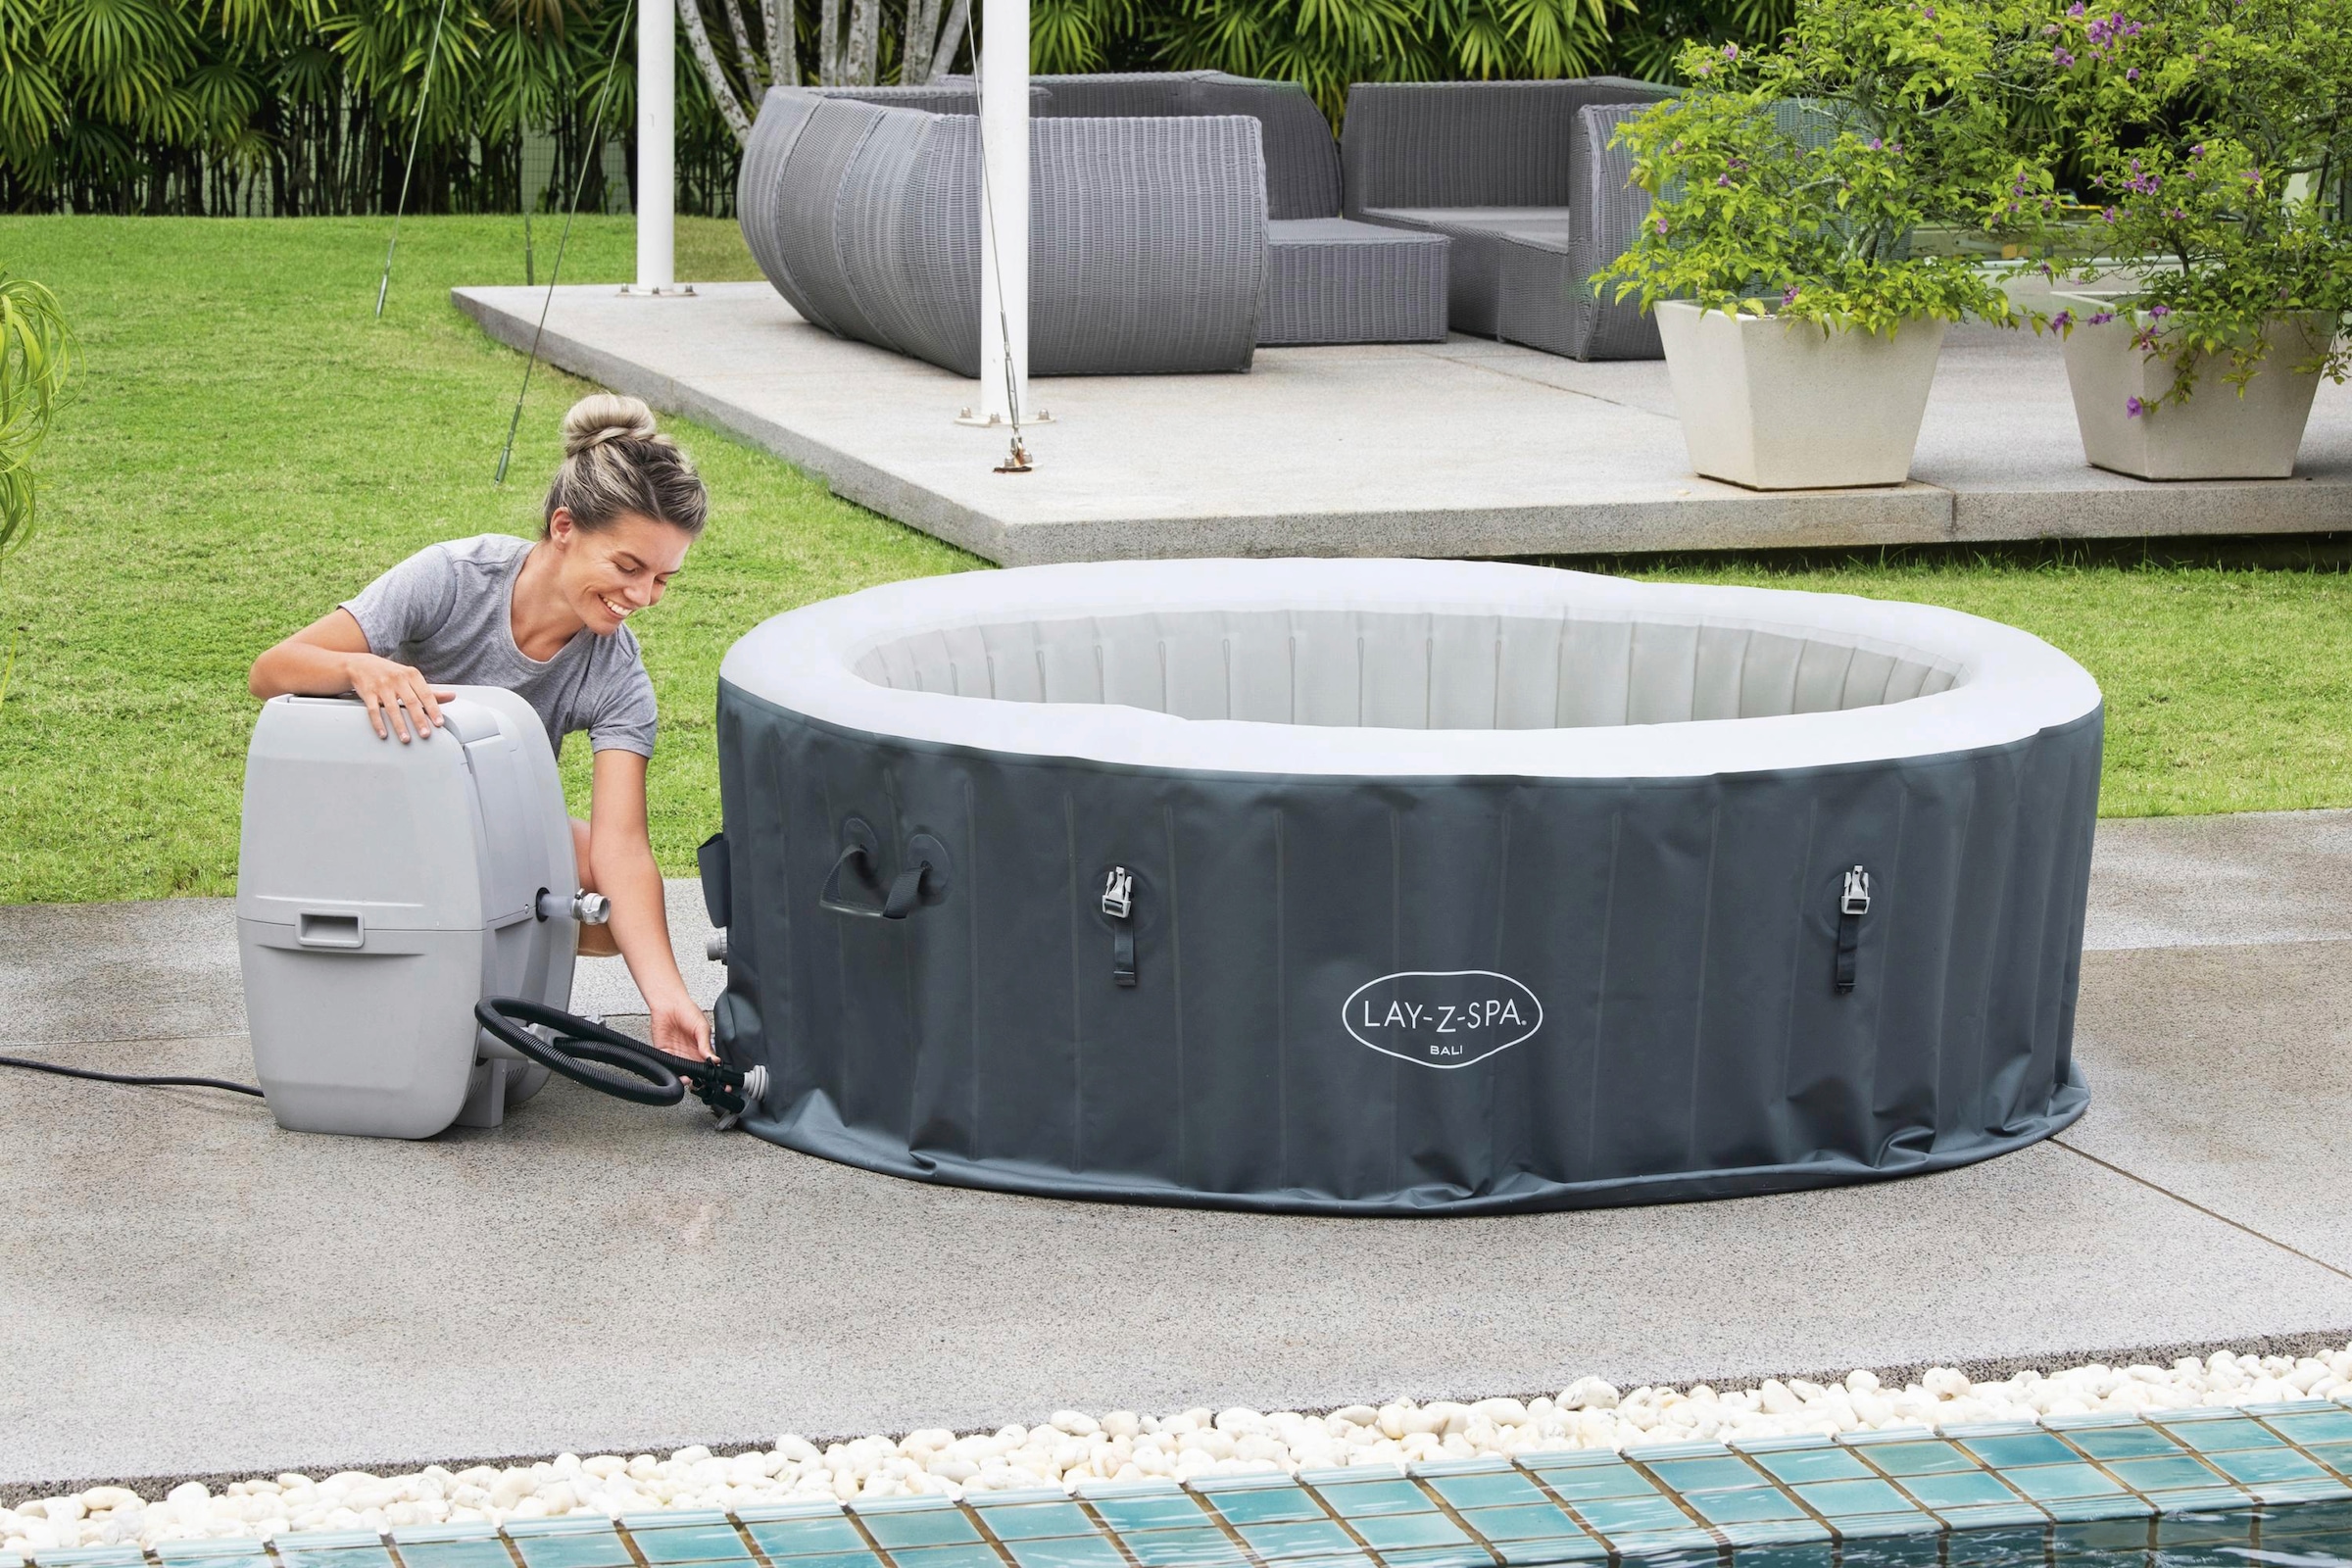 Bestway Whirlpool »LAY-Z-SPA® LED-Bali AirJet™«, ØxH: 180x66 cm, für bis zu 4 Personen